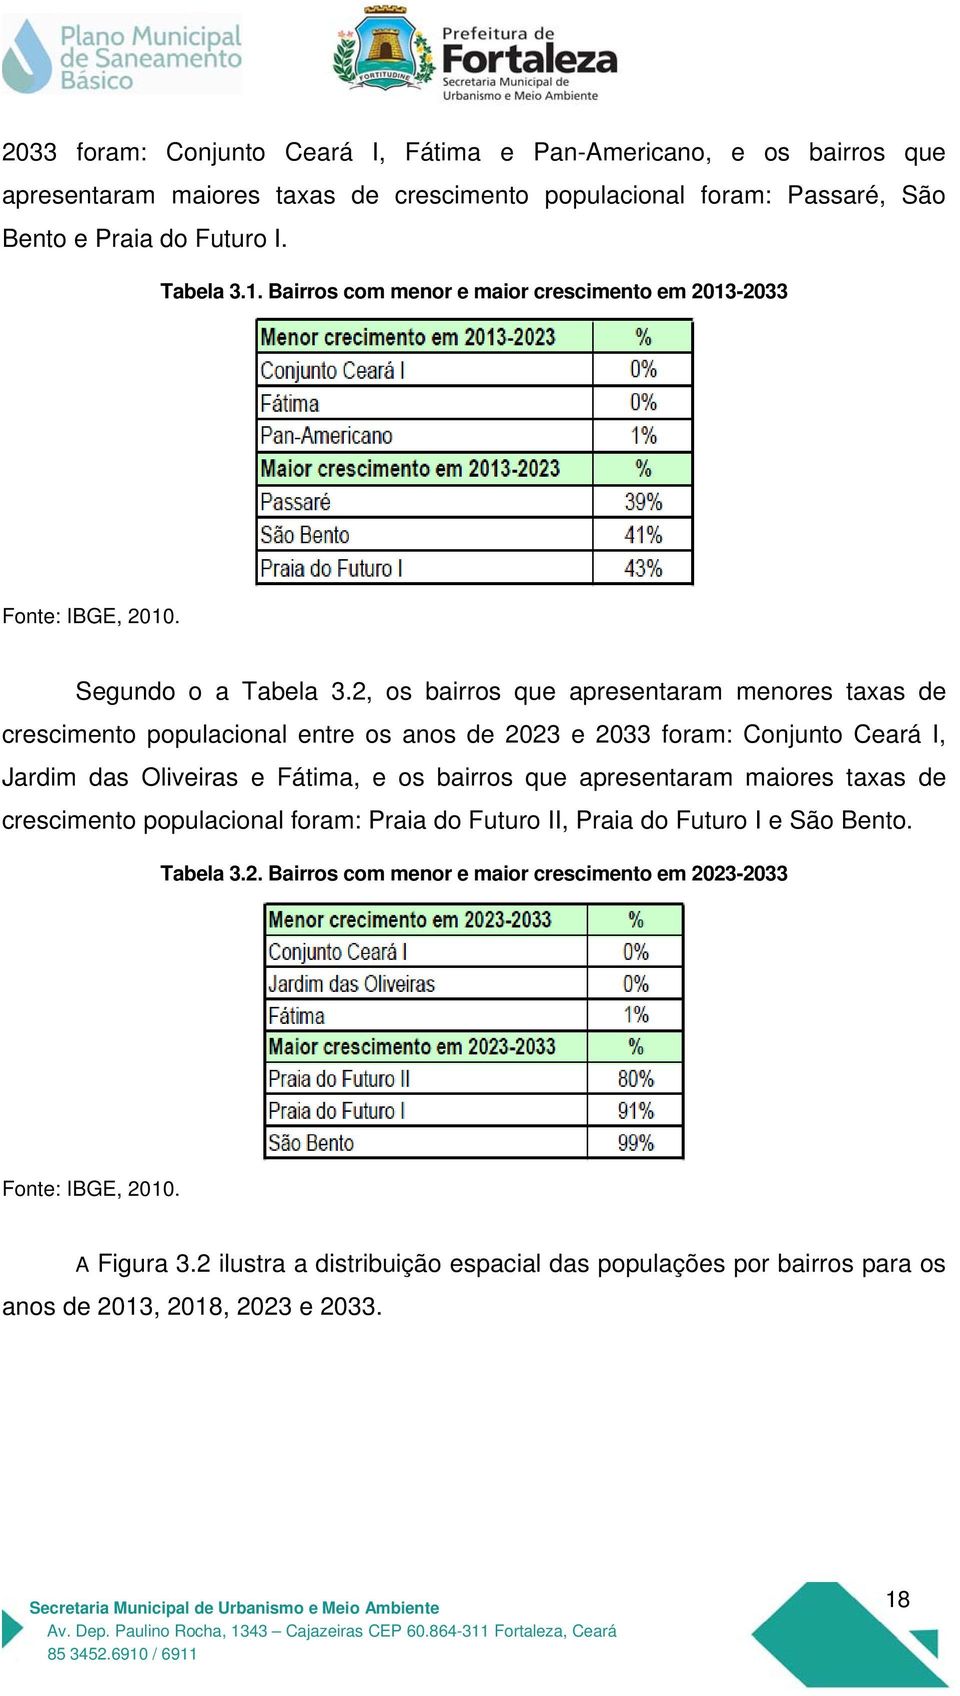 2, os bairros que apresentaram menores taxas de crescimento populacional entre os anos de 2023 e 2033 foram: Conjunto Ceará I, Jardim das Oliveiras e Fátima, e os bairros que apresentaram